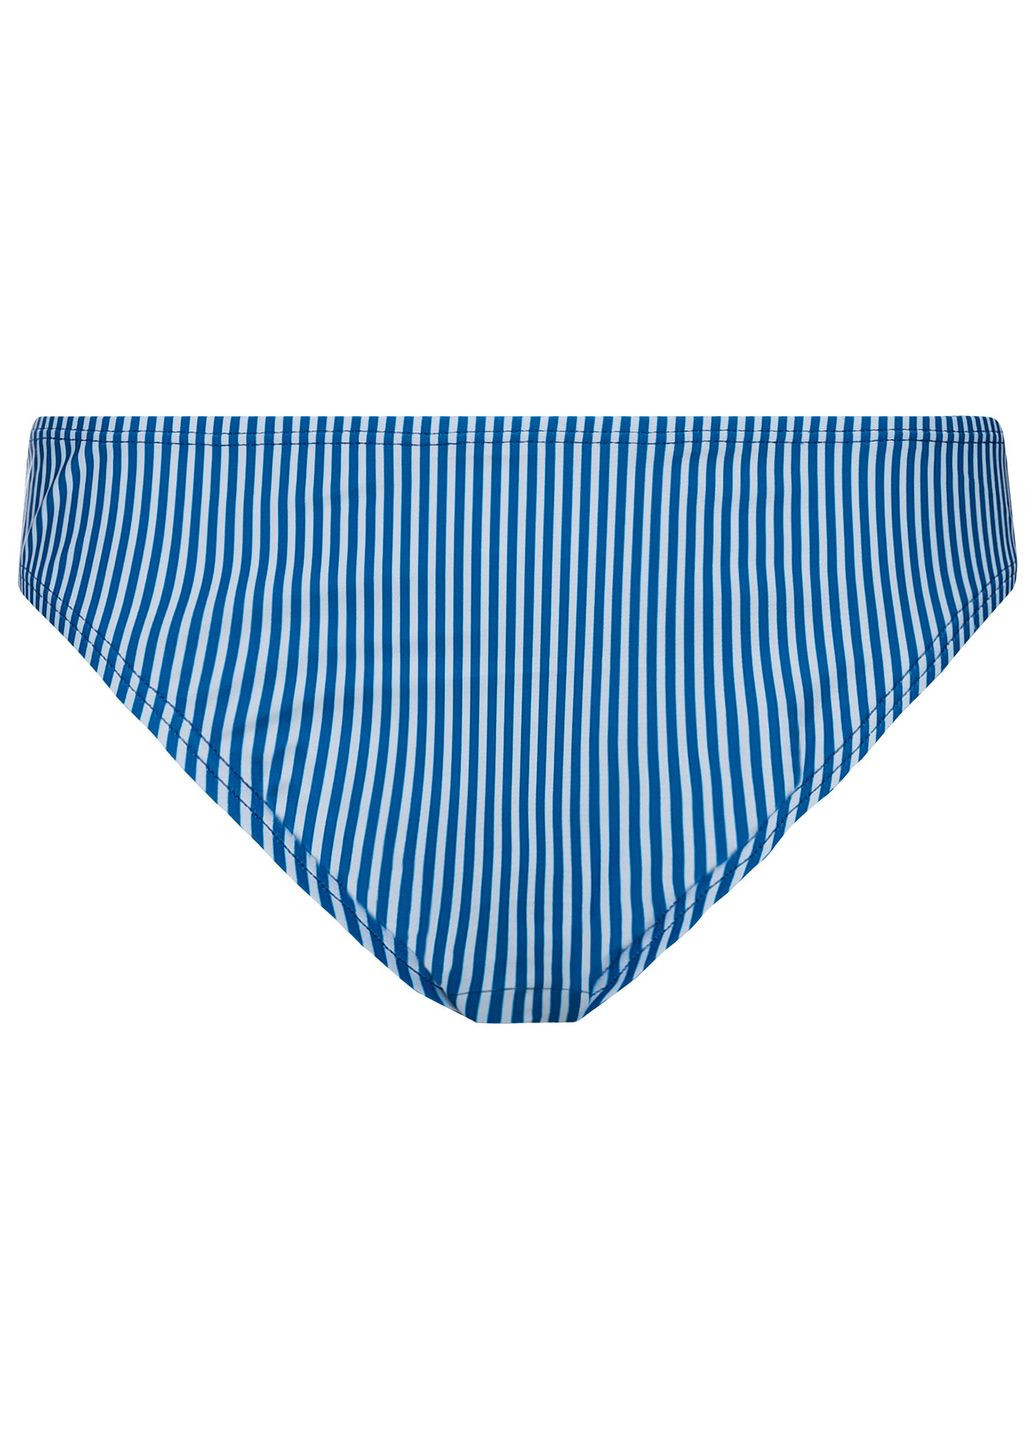 Синие нижняя часть купальника на подкладке для женщины 371922 в полоску Esmara